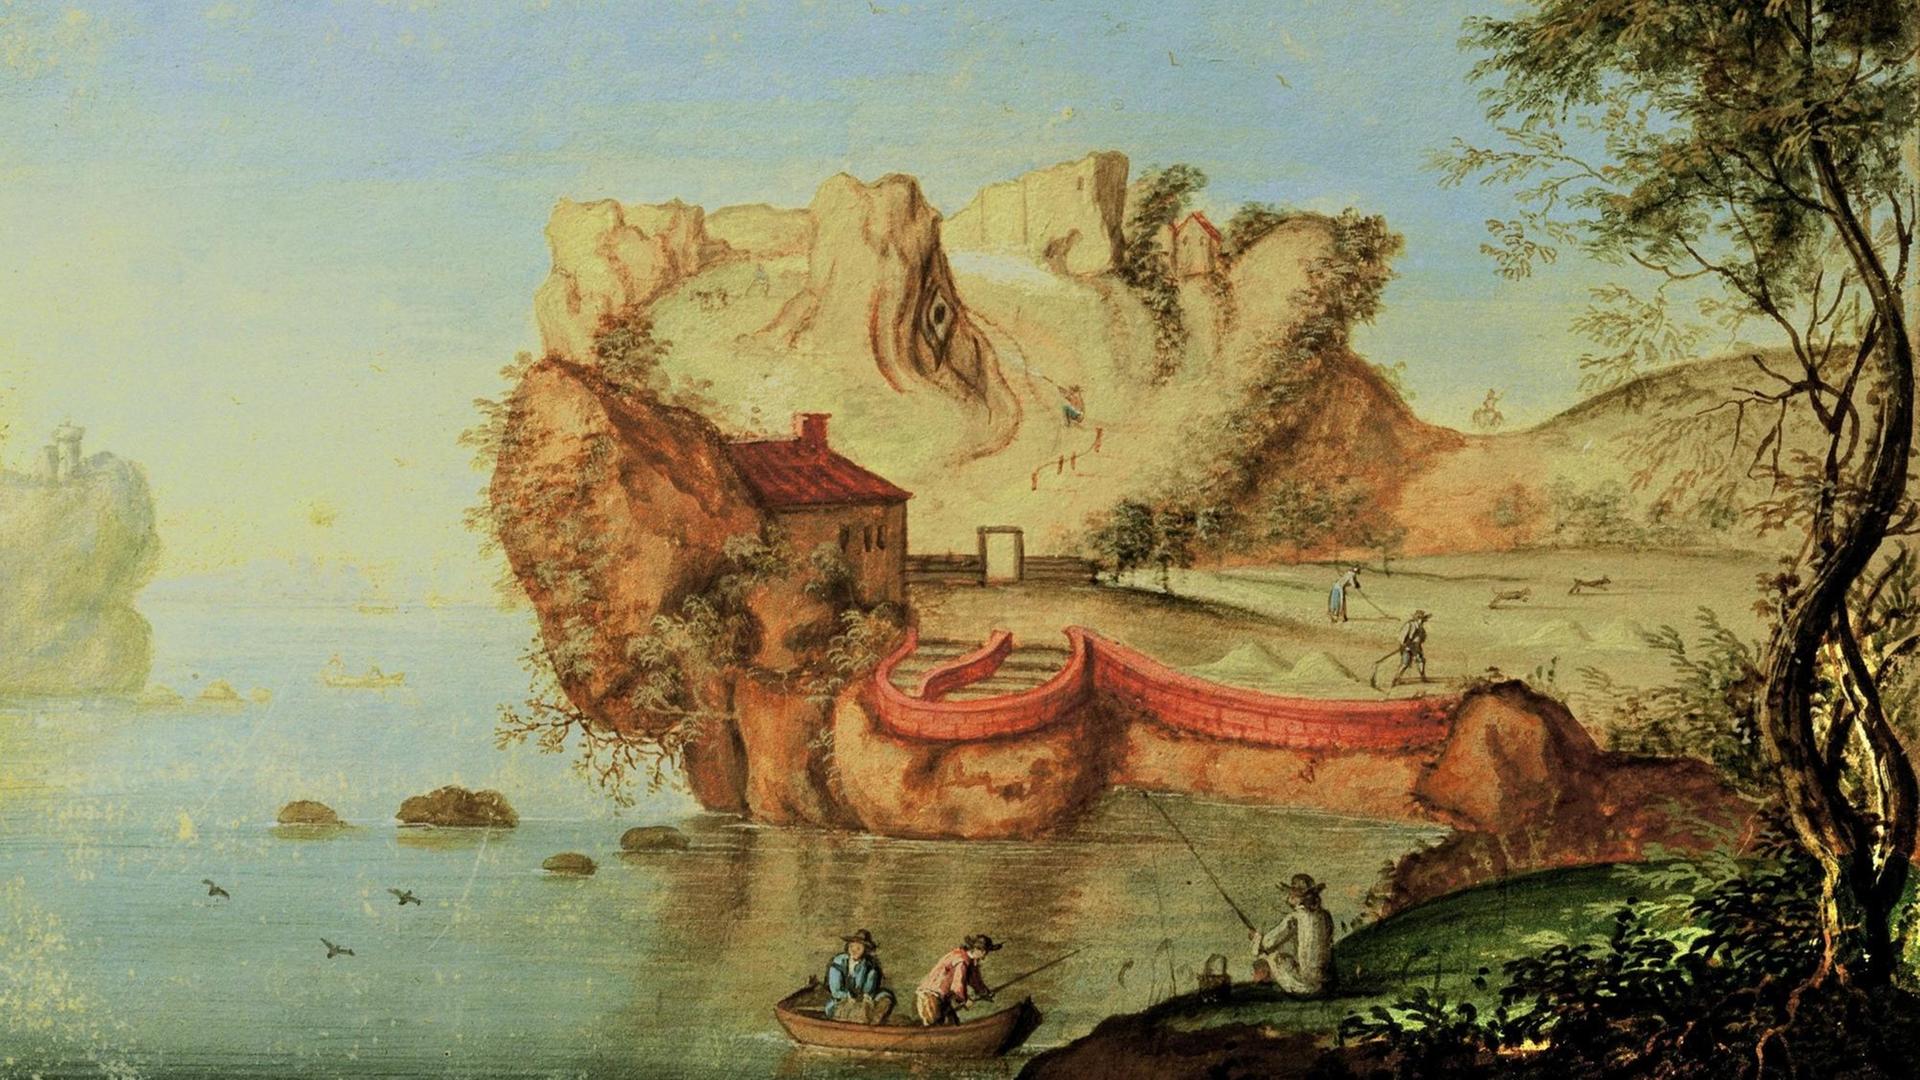 Das Aquarell 'Anthropomorphe Landschaft' von Matthäus Merian (um 1650) zeigt eine Landschaft mit See und Fels. Es handelt sich um ein Vexierbild: Man kann in dem Felsen auch das Gesicht eines Mannes erkennen.